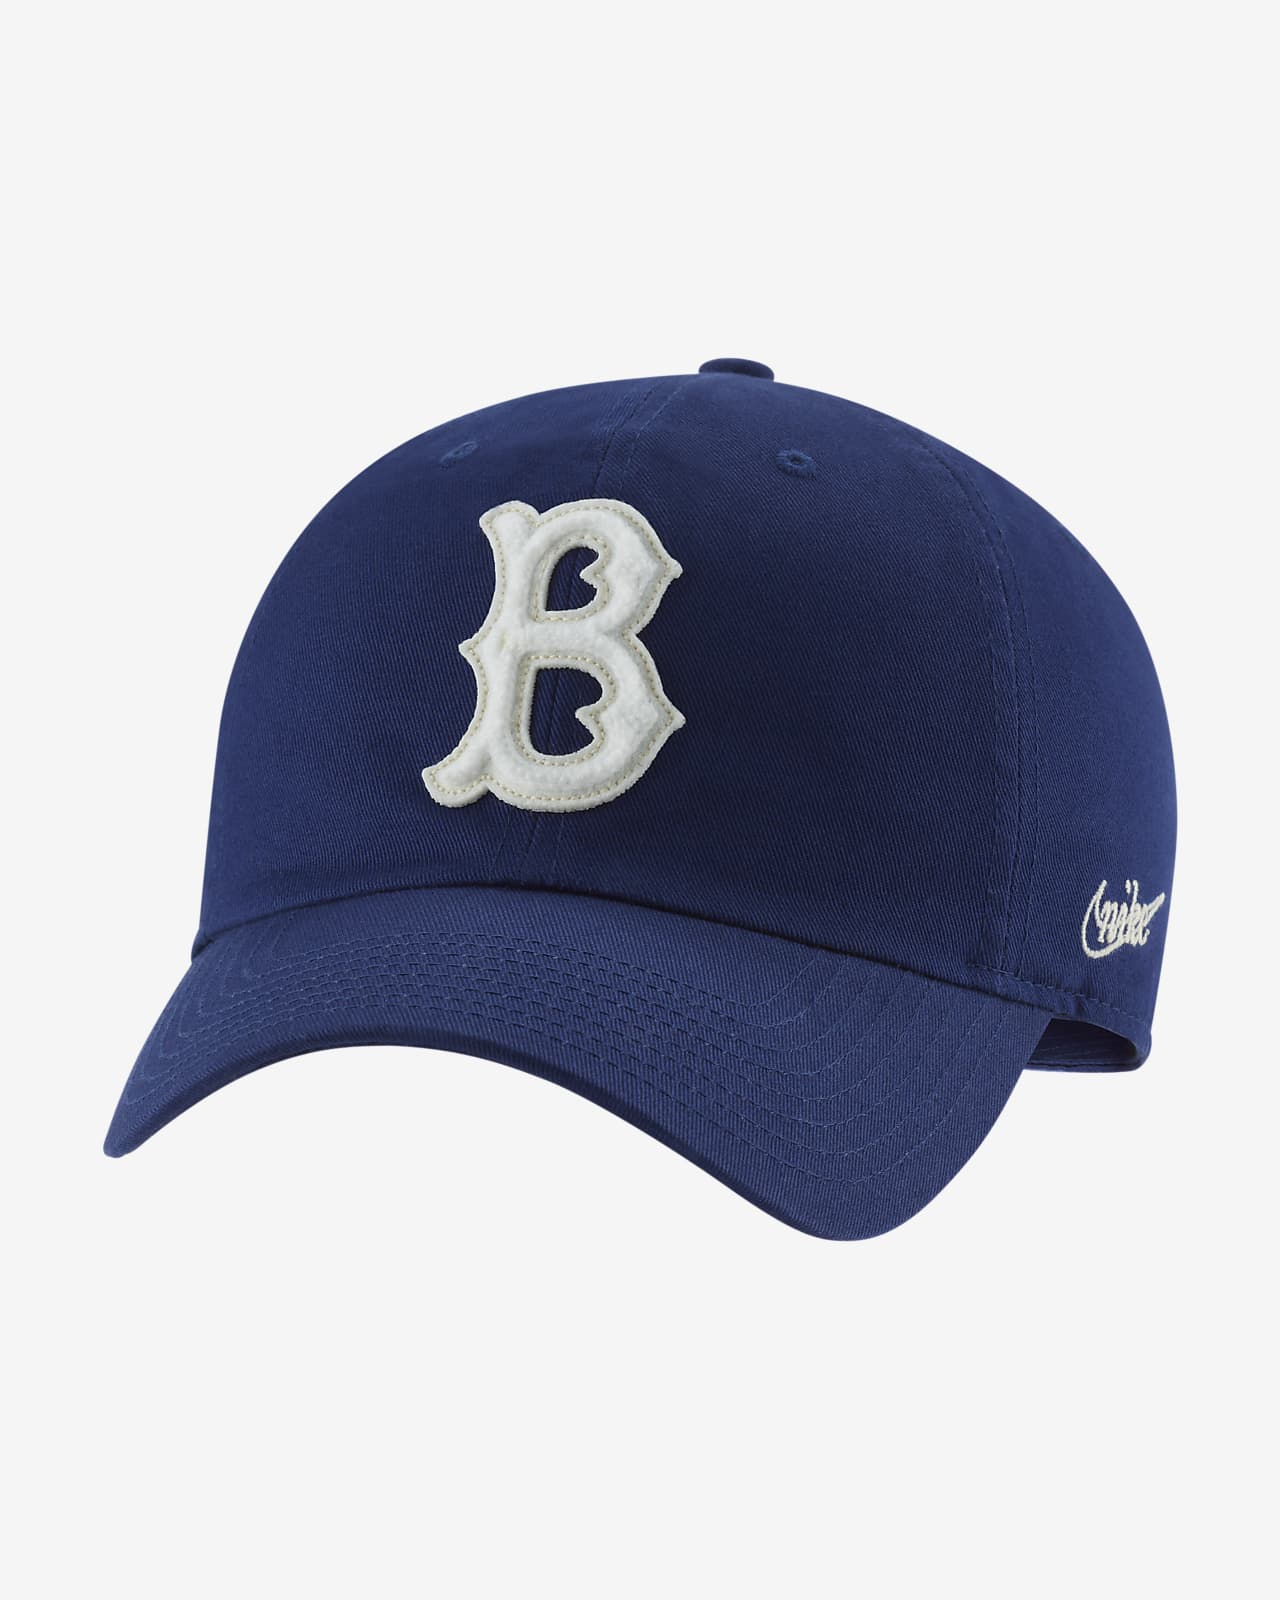 Official MLB Nike Hats Baseball Cap Nike Baseball Hats Beanies   MLBshopcom